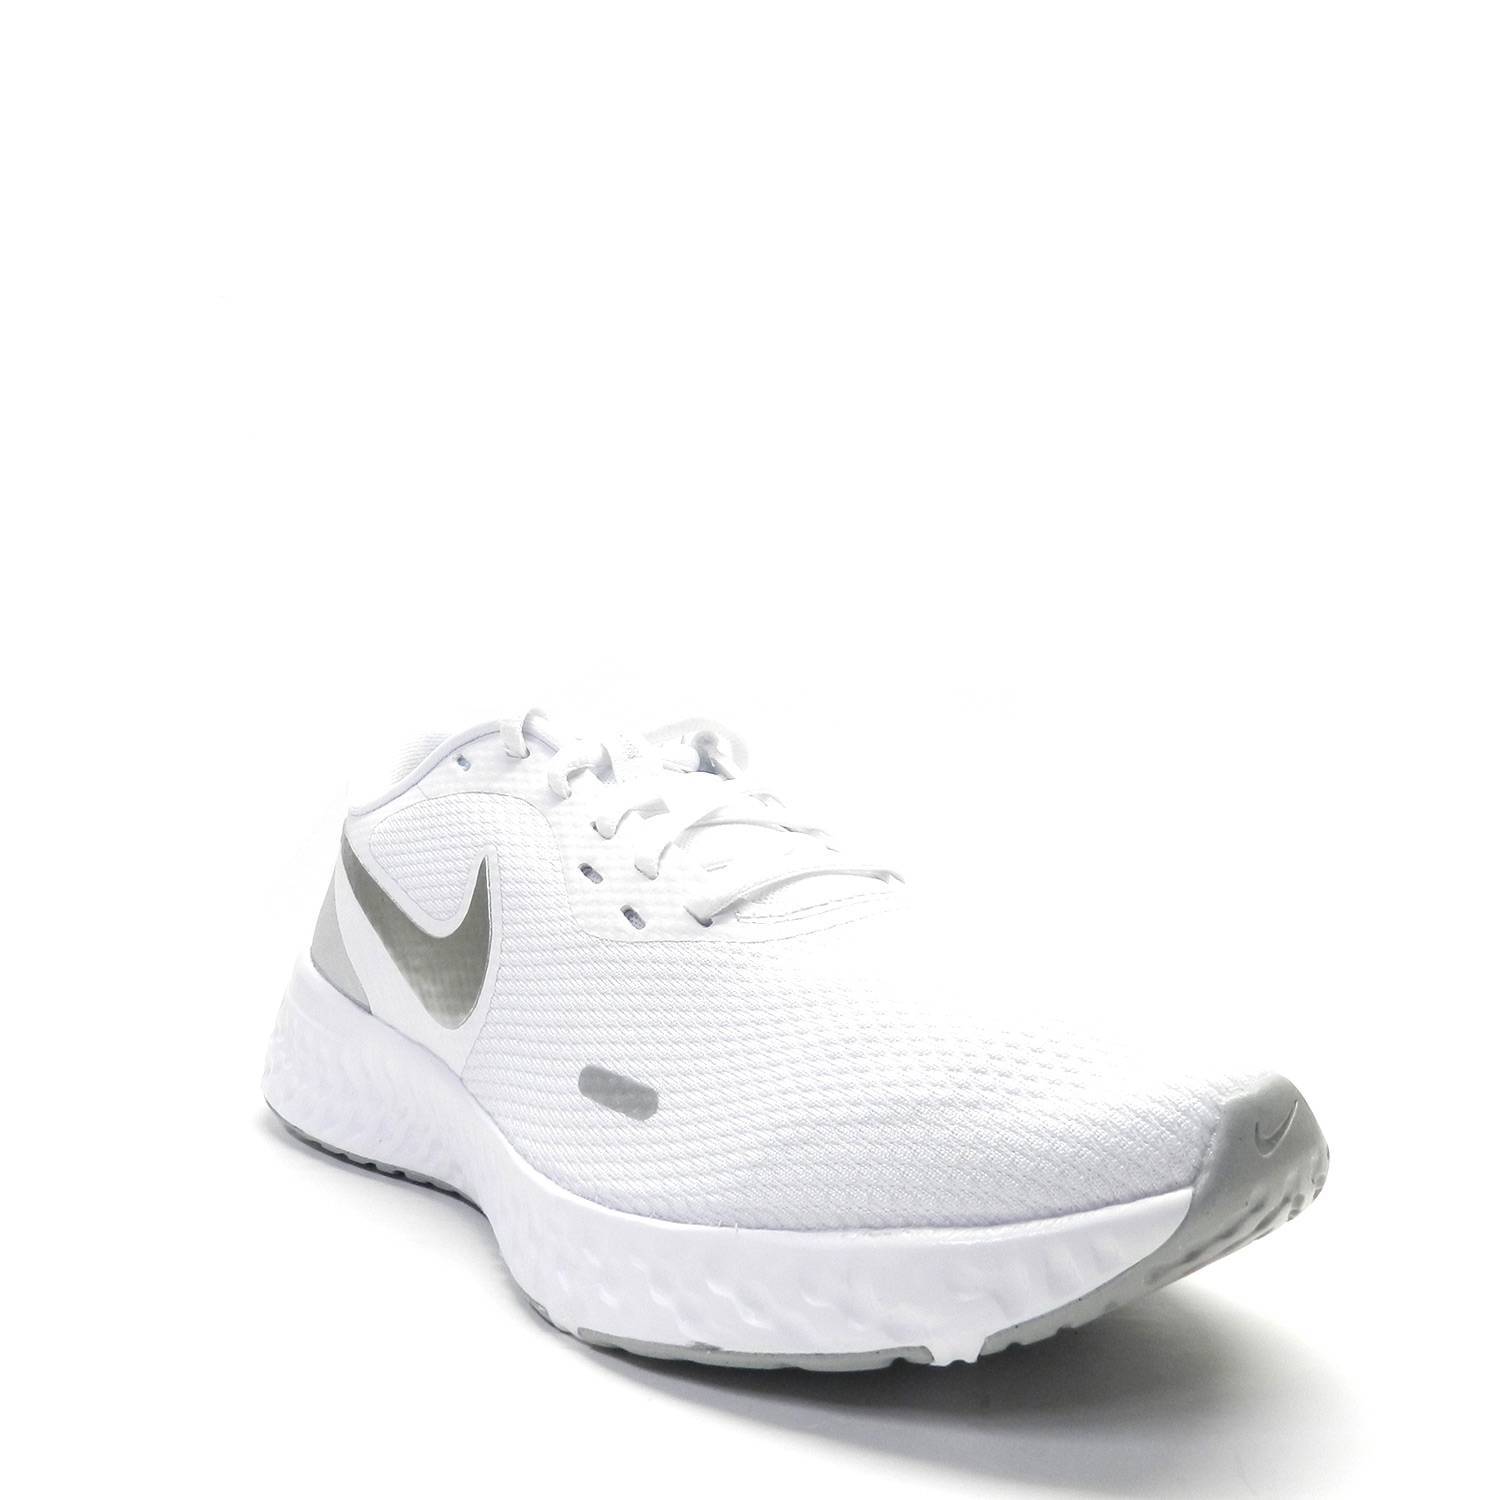 Bolsa Con rapidez extinción Zapatillas Nike Revolution 5 Blanco - Escala Sabates - Envío gratuito